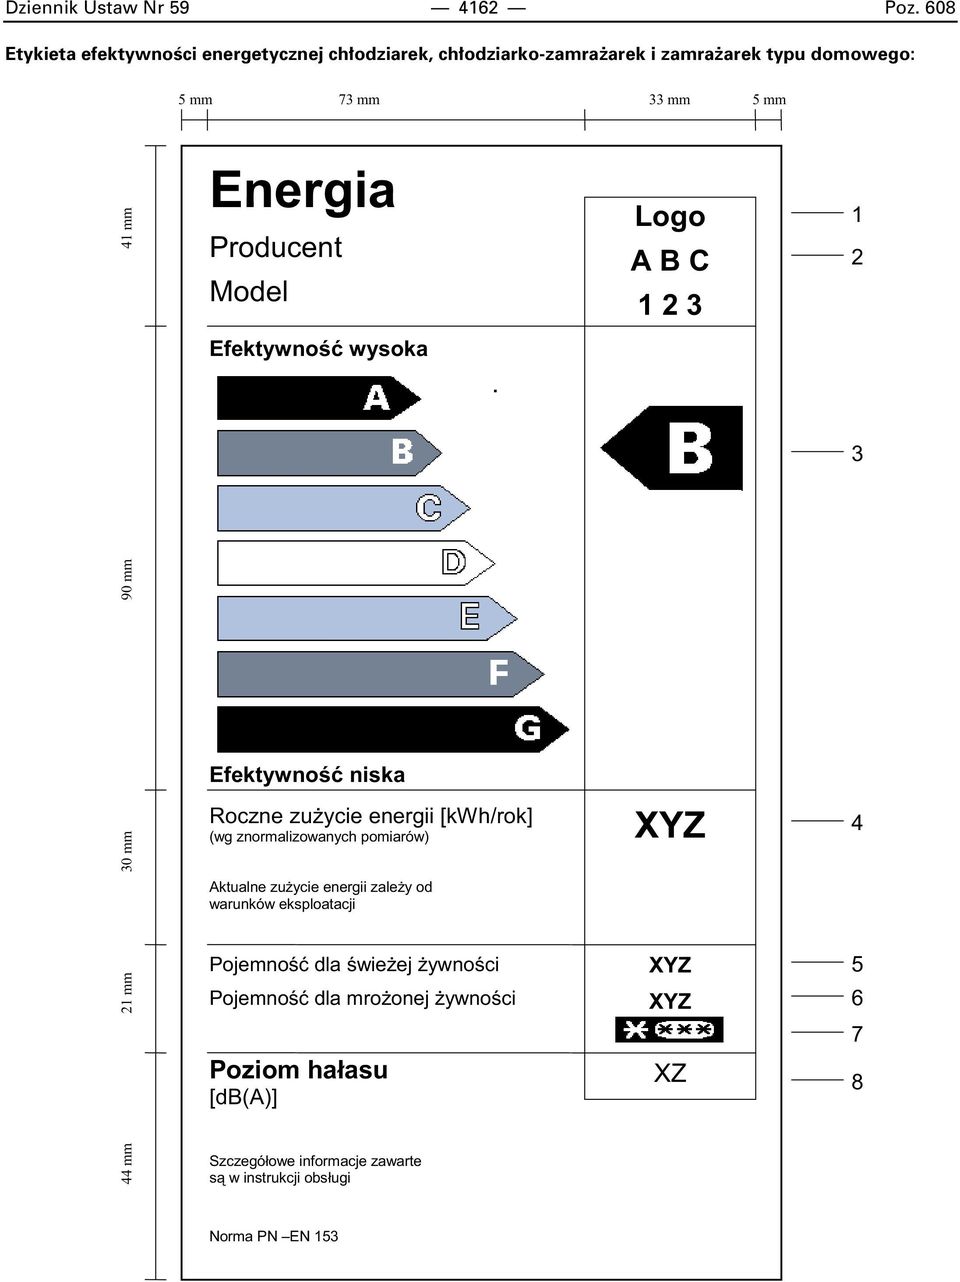 Energia Producent Model Logo A B C 2 3 2 Efektywno wysoka 3 90 mm Efektywno niska 30 mm Roczne zu ycie energii [kwh/rok] (wg